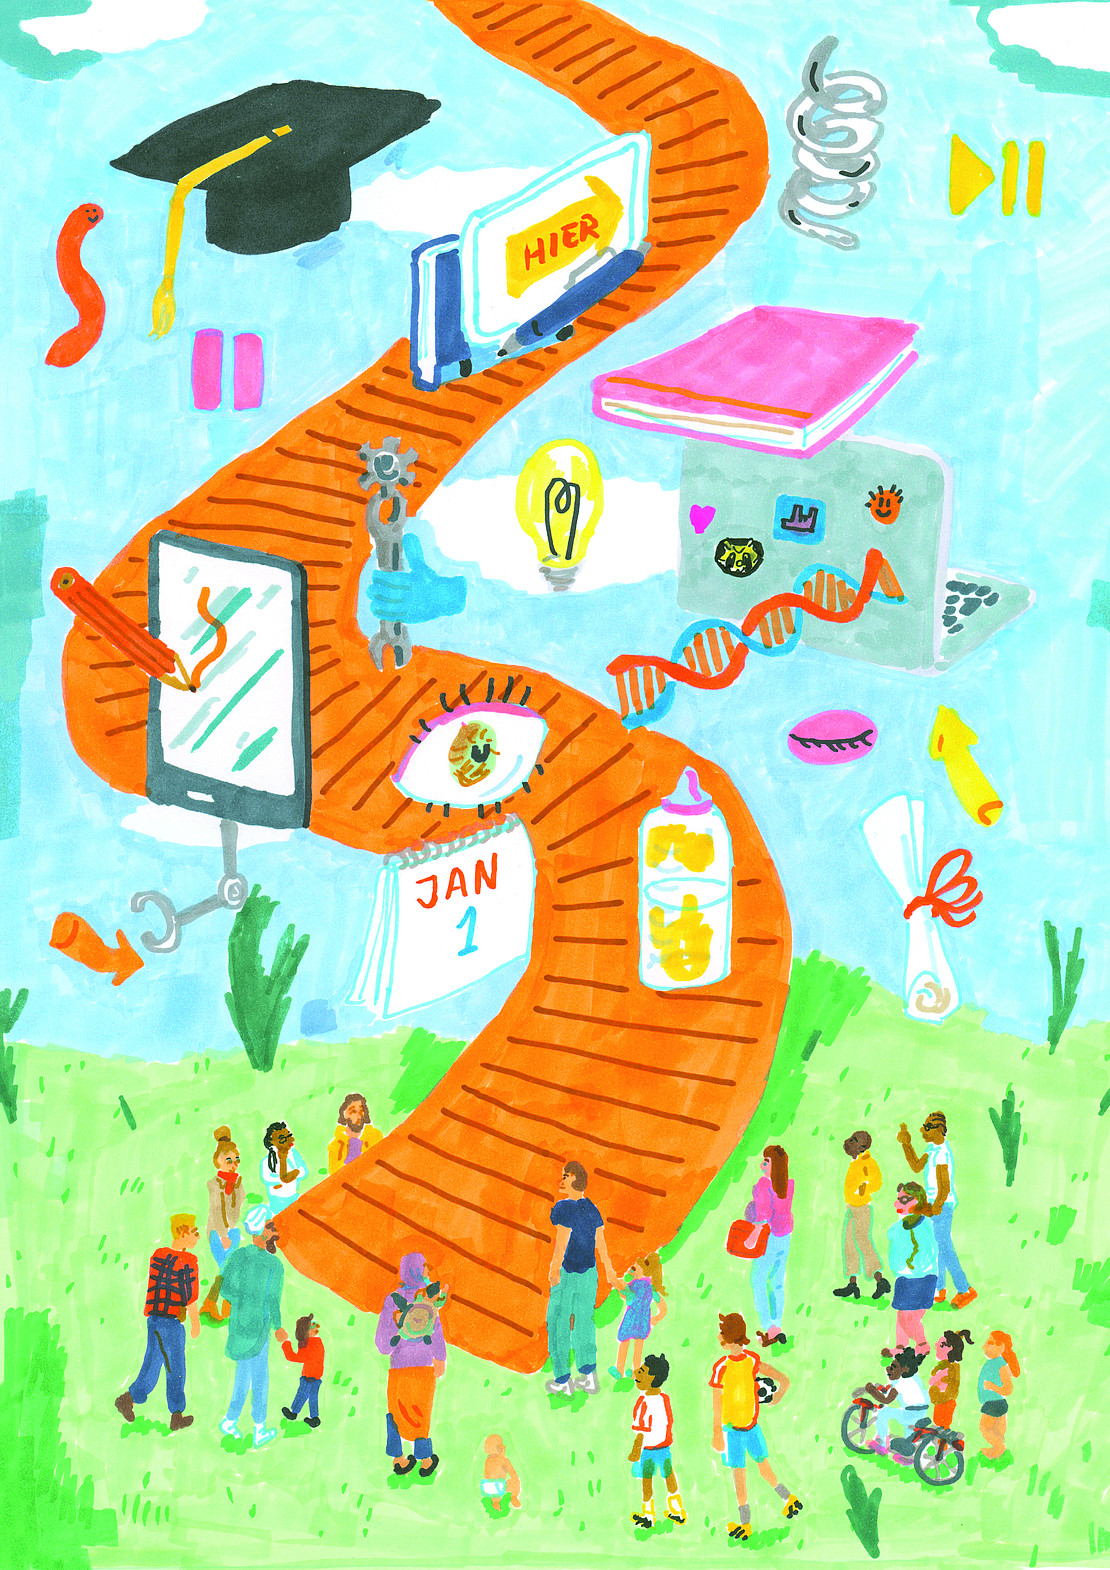 Abstrakte Illustration, die unterschiedliche Aspekte der Organisation von Studium mit Kindern darstellt: Auf einer Wiese führt eine geschwungene Treppe in den blauen Himmel. Neben und über der Treppe schweben Symbole, die das Studium mit Kind symbolisieren. Folgende Symbole sind abgebildet: ein Doktorhut, ein aufgeklappter Laptop, eine Glühbirne, ein Tischkalender, Bücher, ein Bücherwurm, ein Tablet, ein Auge, eine Doppelhelix, ein Pausenzeichen, eine Hand mit Maulschlüsselwerkzeug, eine Babyflasche, eine Spirale und Pfeile. Um die Treppe versammelt steht eine Gruppe von Erwachsenen, Kindern und Babys. Sie sehen sich die Treppe und die darüber schwebenden Symbole an.